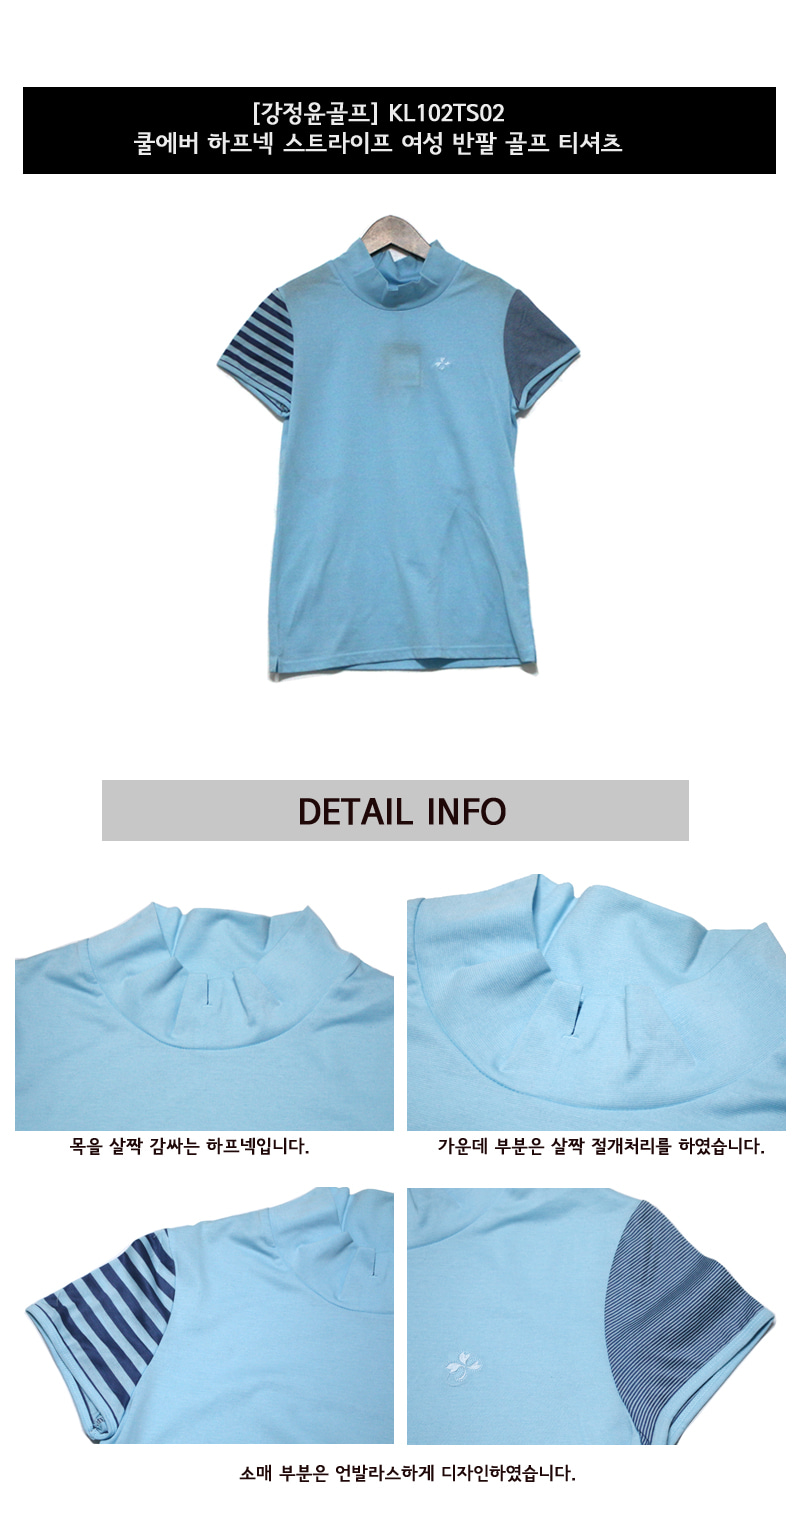 강정윤골프 하프넥 스트라이프 여성 반팔 골프 티셔츠 (KL102TS02) 색상 디테일 설명